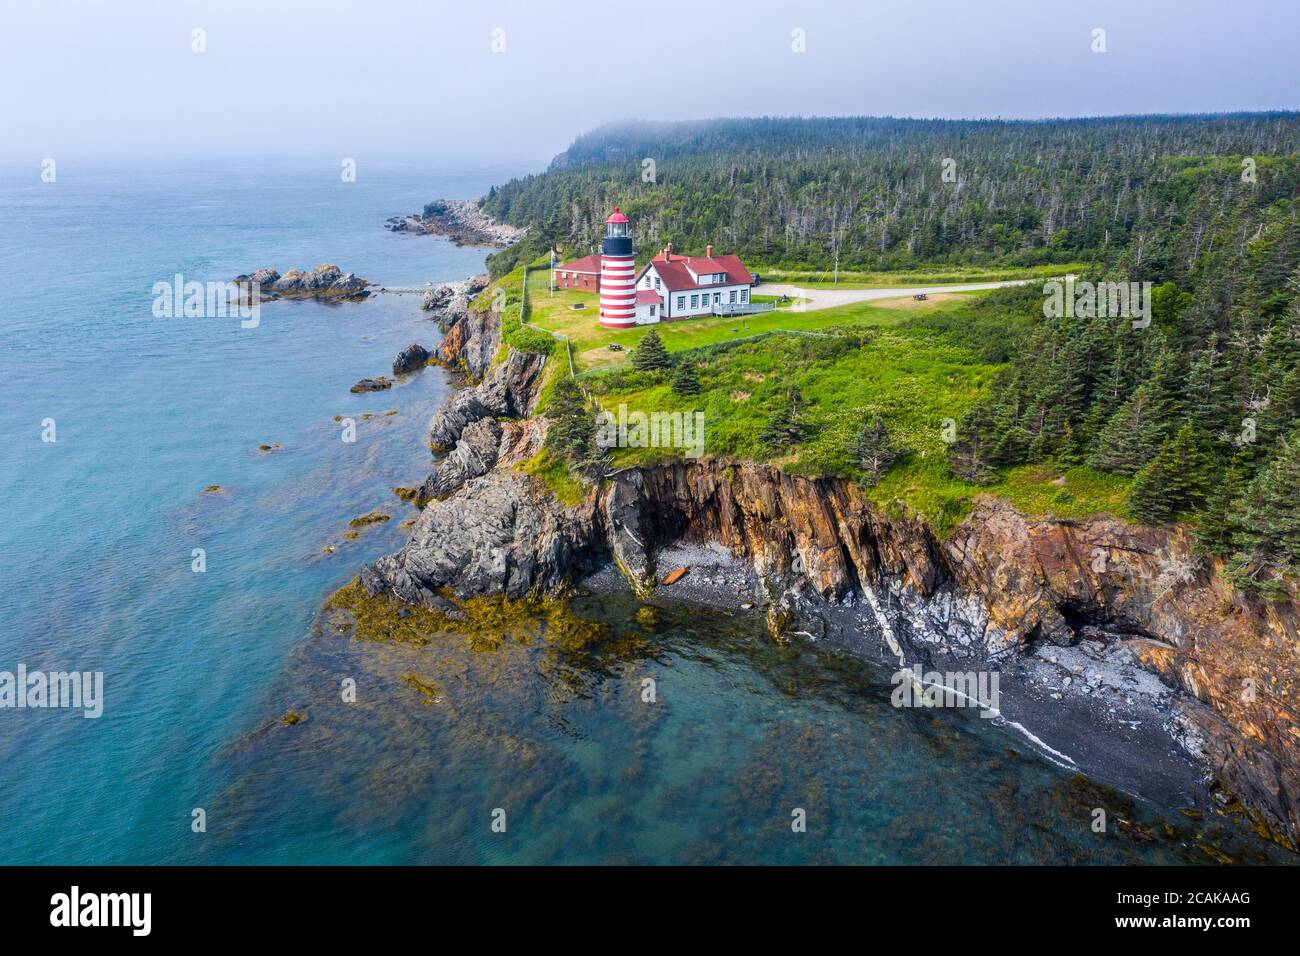 West Quoddy Head Lighthouse, parc national de Quoddy Head, Lubec, Maine, États-Unis Banque D'Images